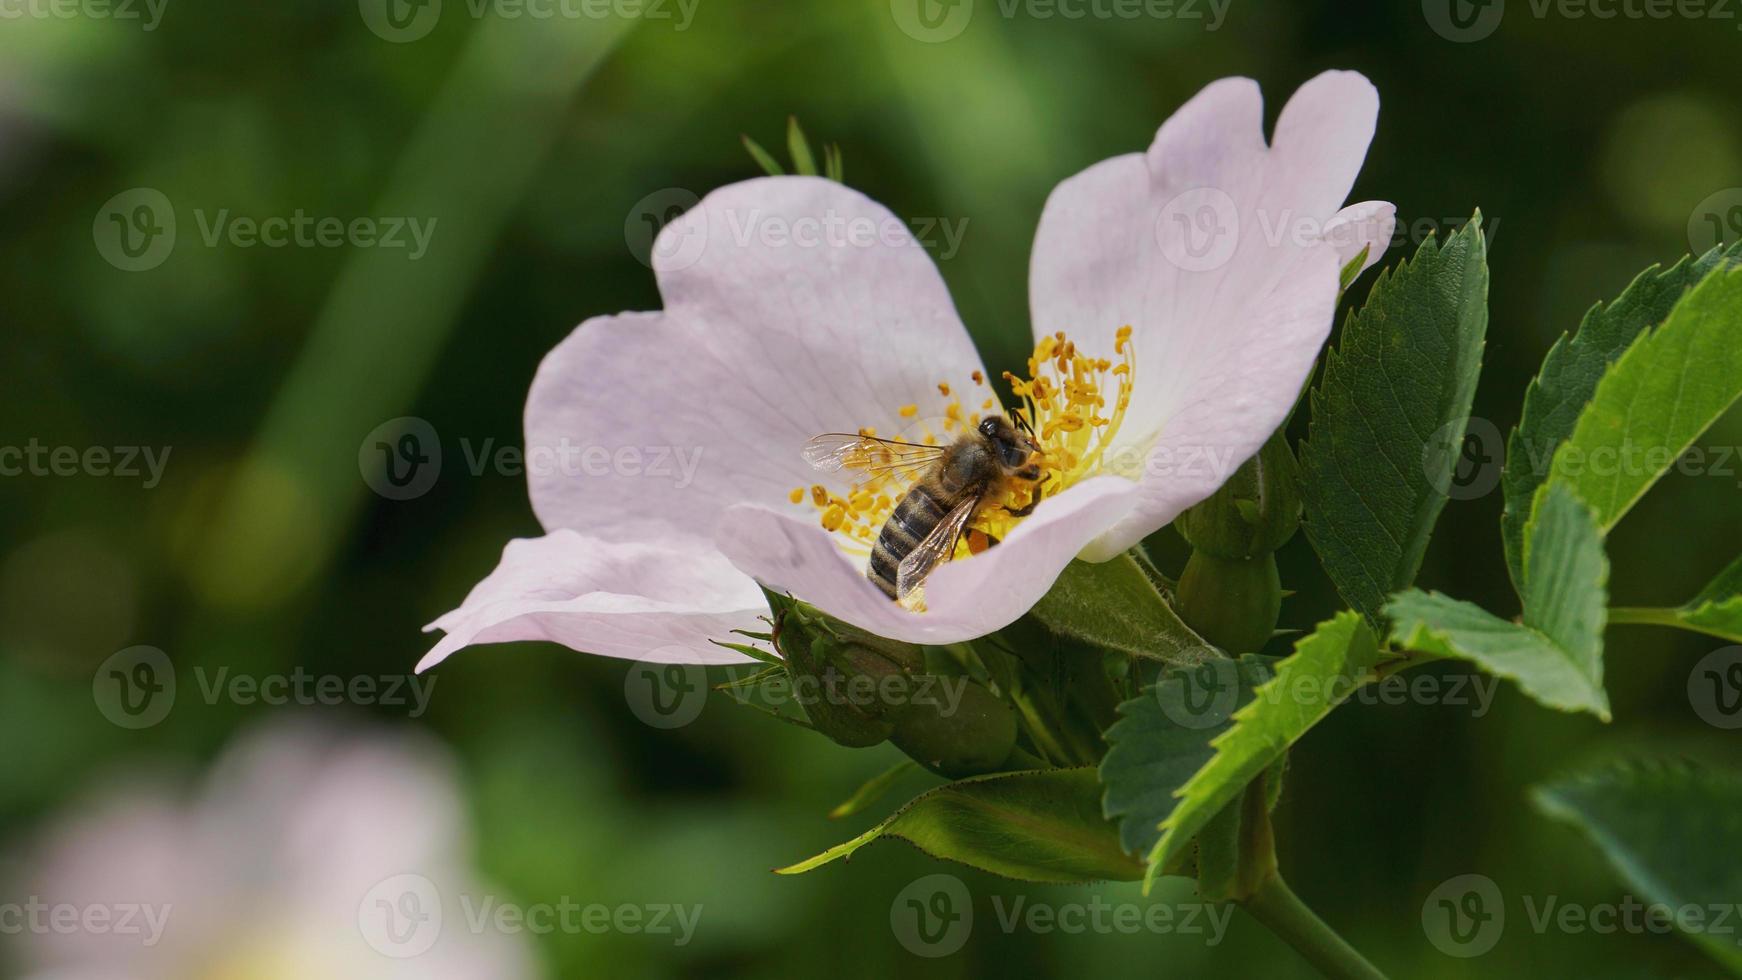 Detaillierte authentische Aufnahme einer Biene, die Pollen von einer blühenden Blume sammelt. Konzept der Natur, Ökologie, Arbeit. natürliches rohes Foto einer fleißigen Biene.